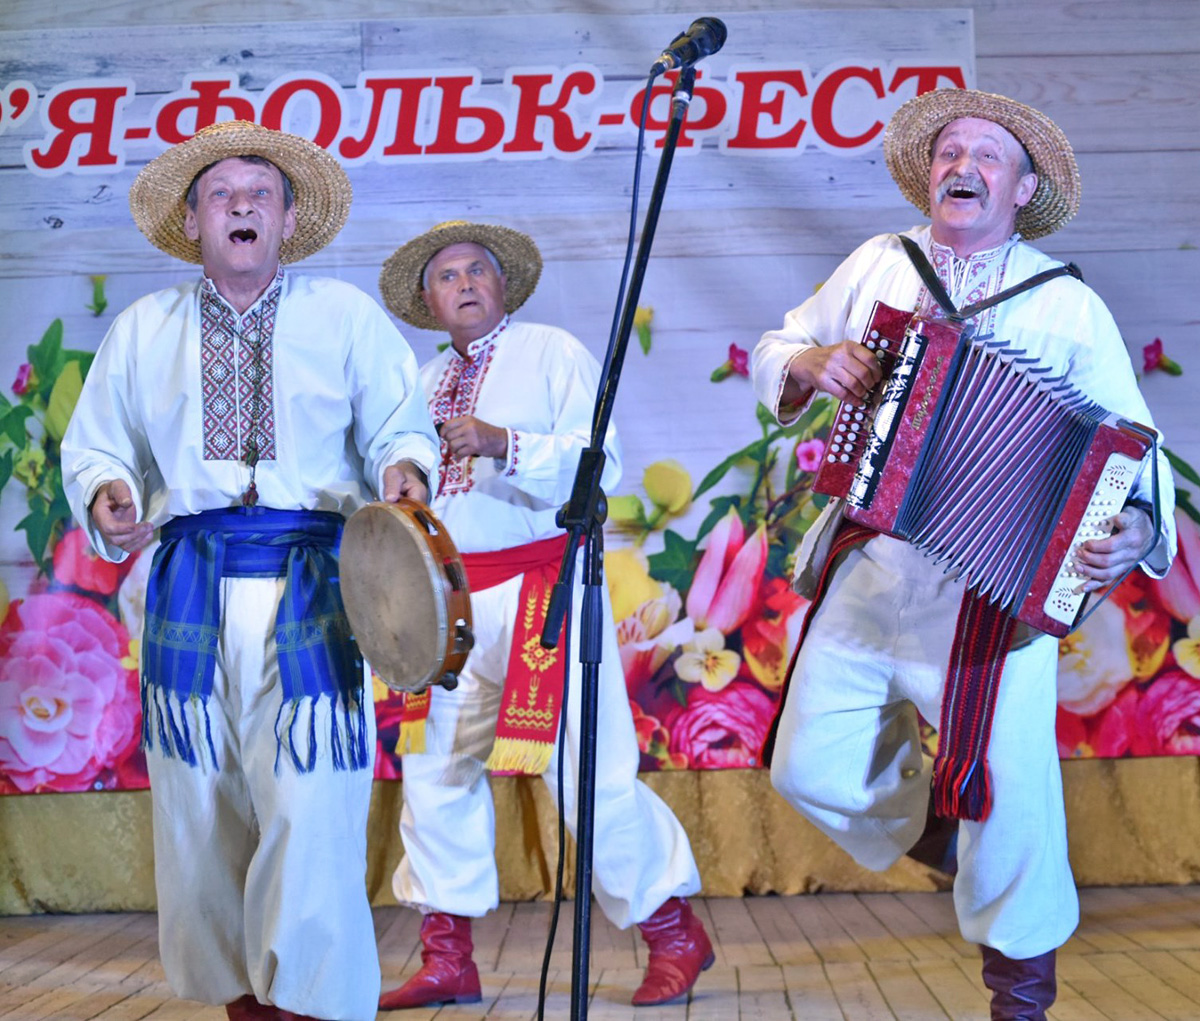 Під такі пісні ноги самі йдуть у танець, а душа сміється. Фото з сайту bilozirska.gromada.org.ua